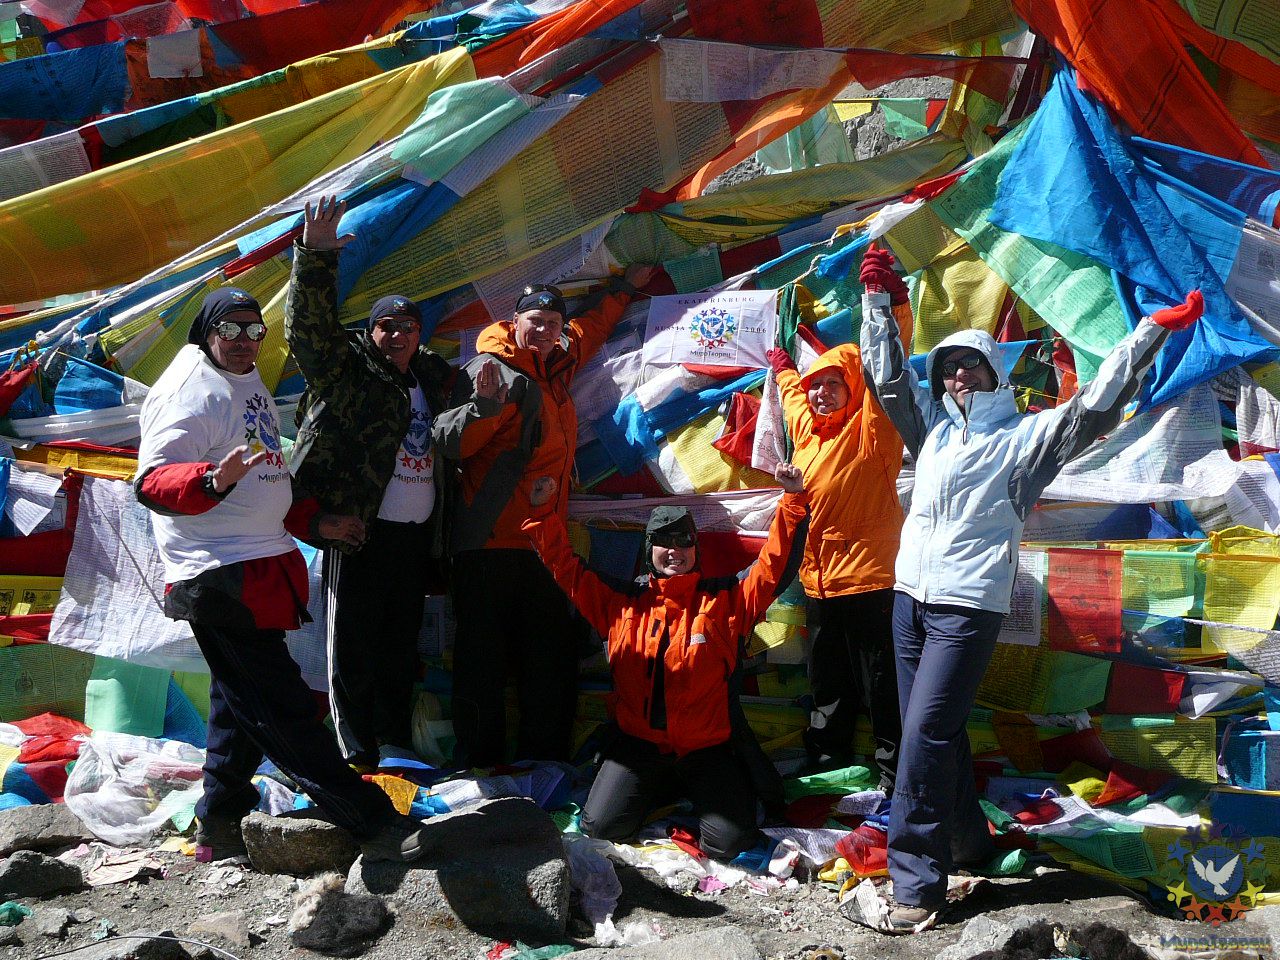 На перевале. Высшая точка Коры.5632м. Мы сделали это во имя возрождения Биологического Цветка Жизни на Земле! - Тибет 2006. Фотовоспоминание 5 лет спустя.